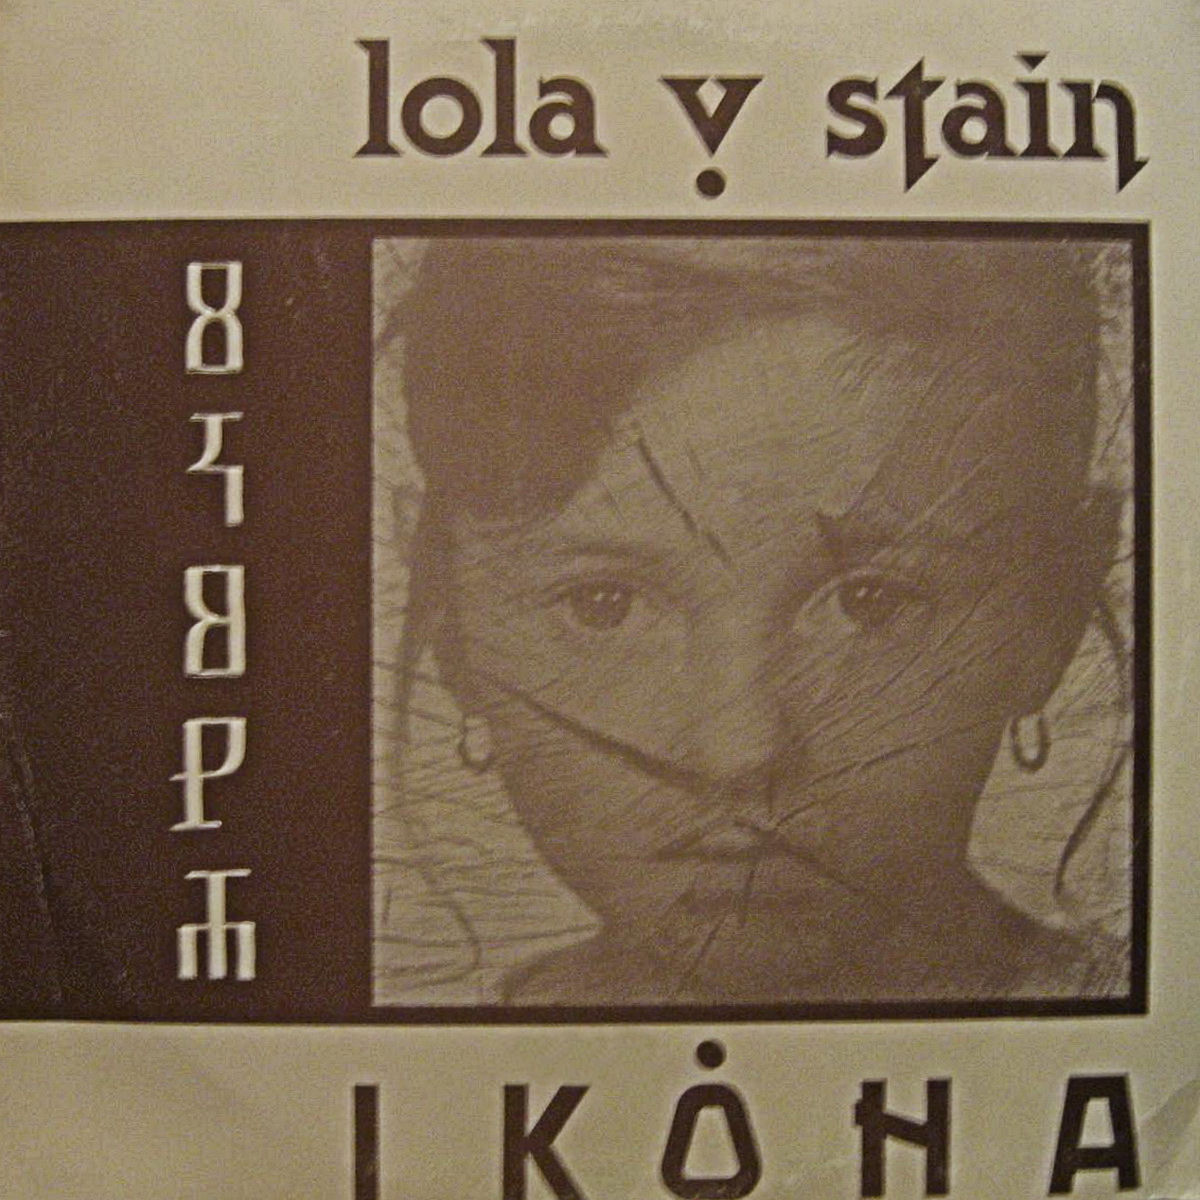 Lola V Stajn 1990 Ikona a